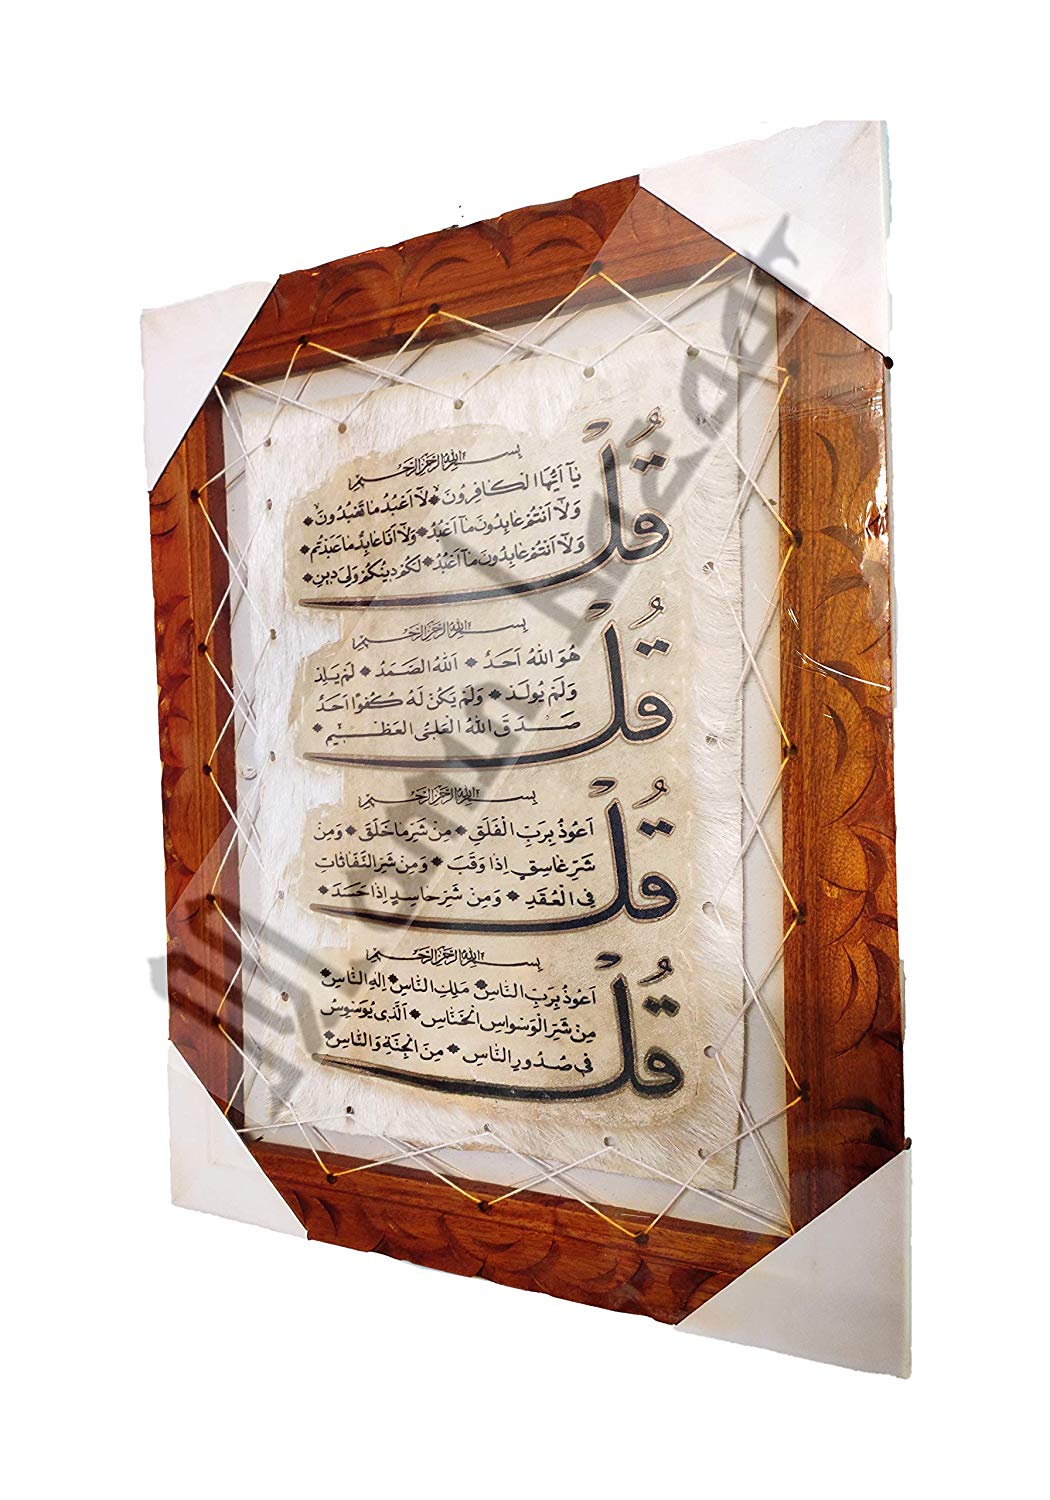 Goat Skin Calligraphy Frame Islamic TUGRA 4 QULS Islamic Wall Frame Islamic Decor Item 17.5INCH * 13.5 INCH